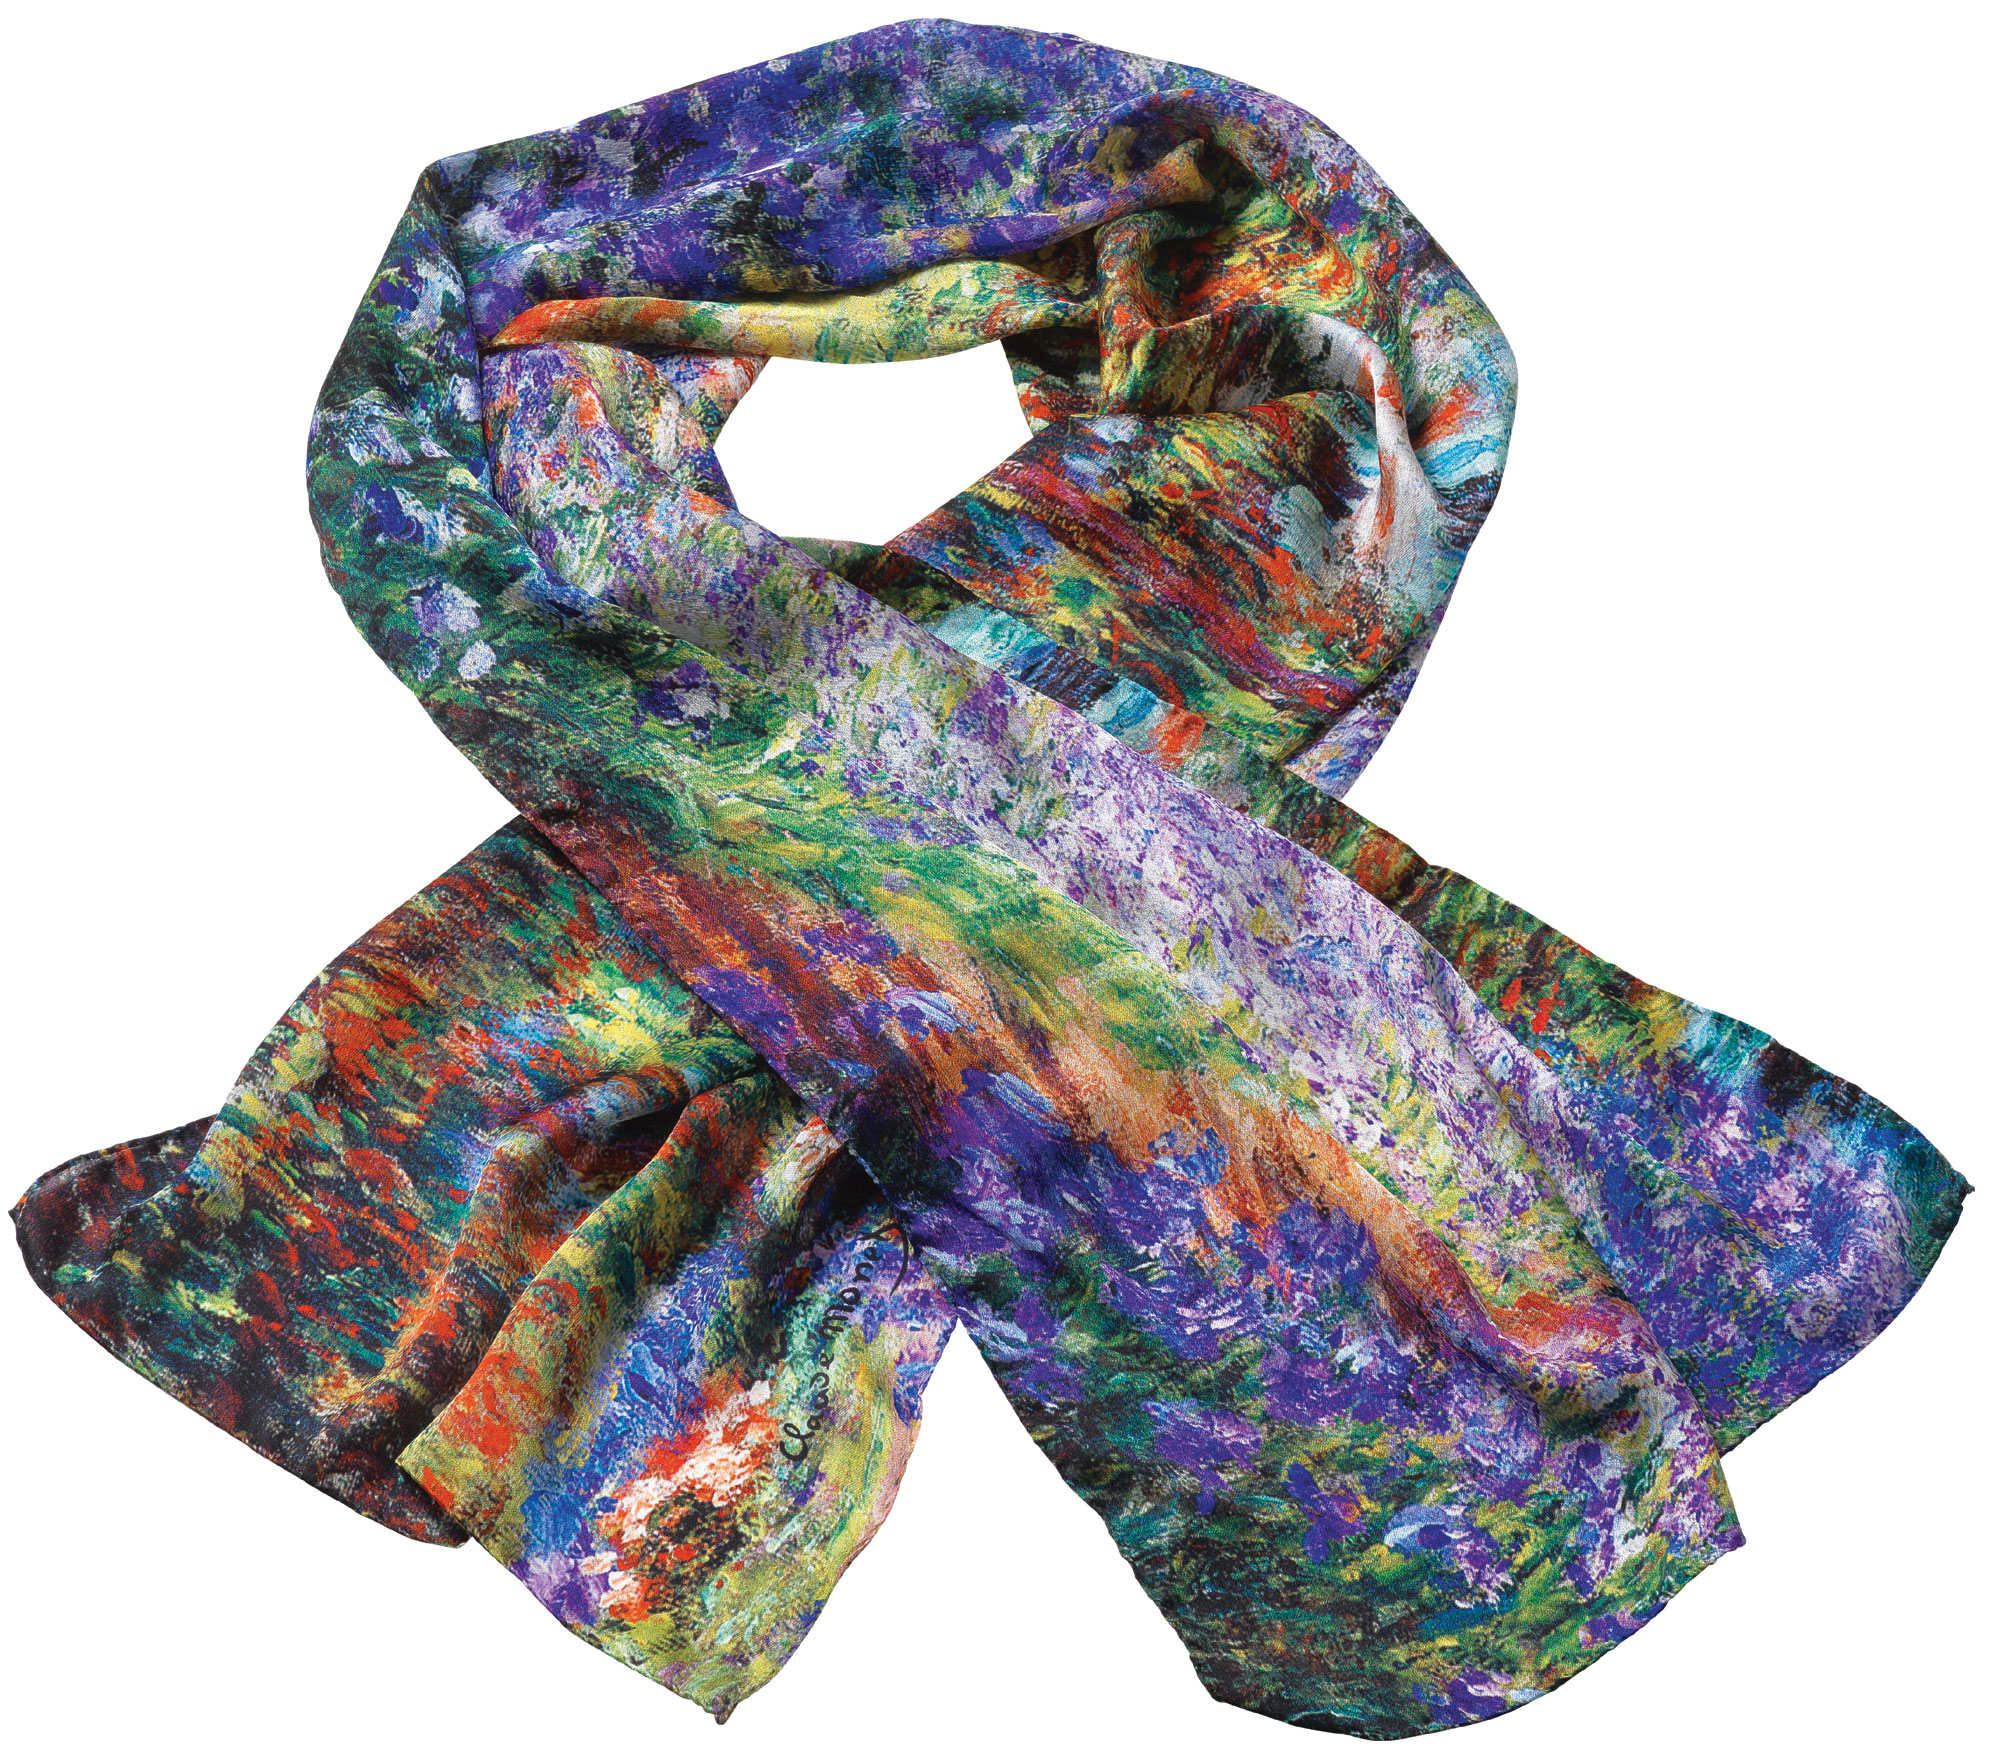 Silk scarf "Irises in Monet's Garden" by Claude Monet